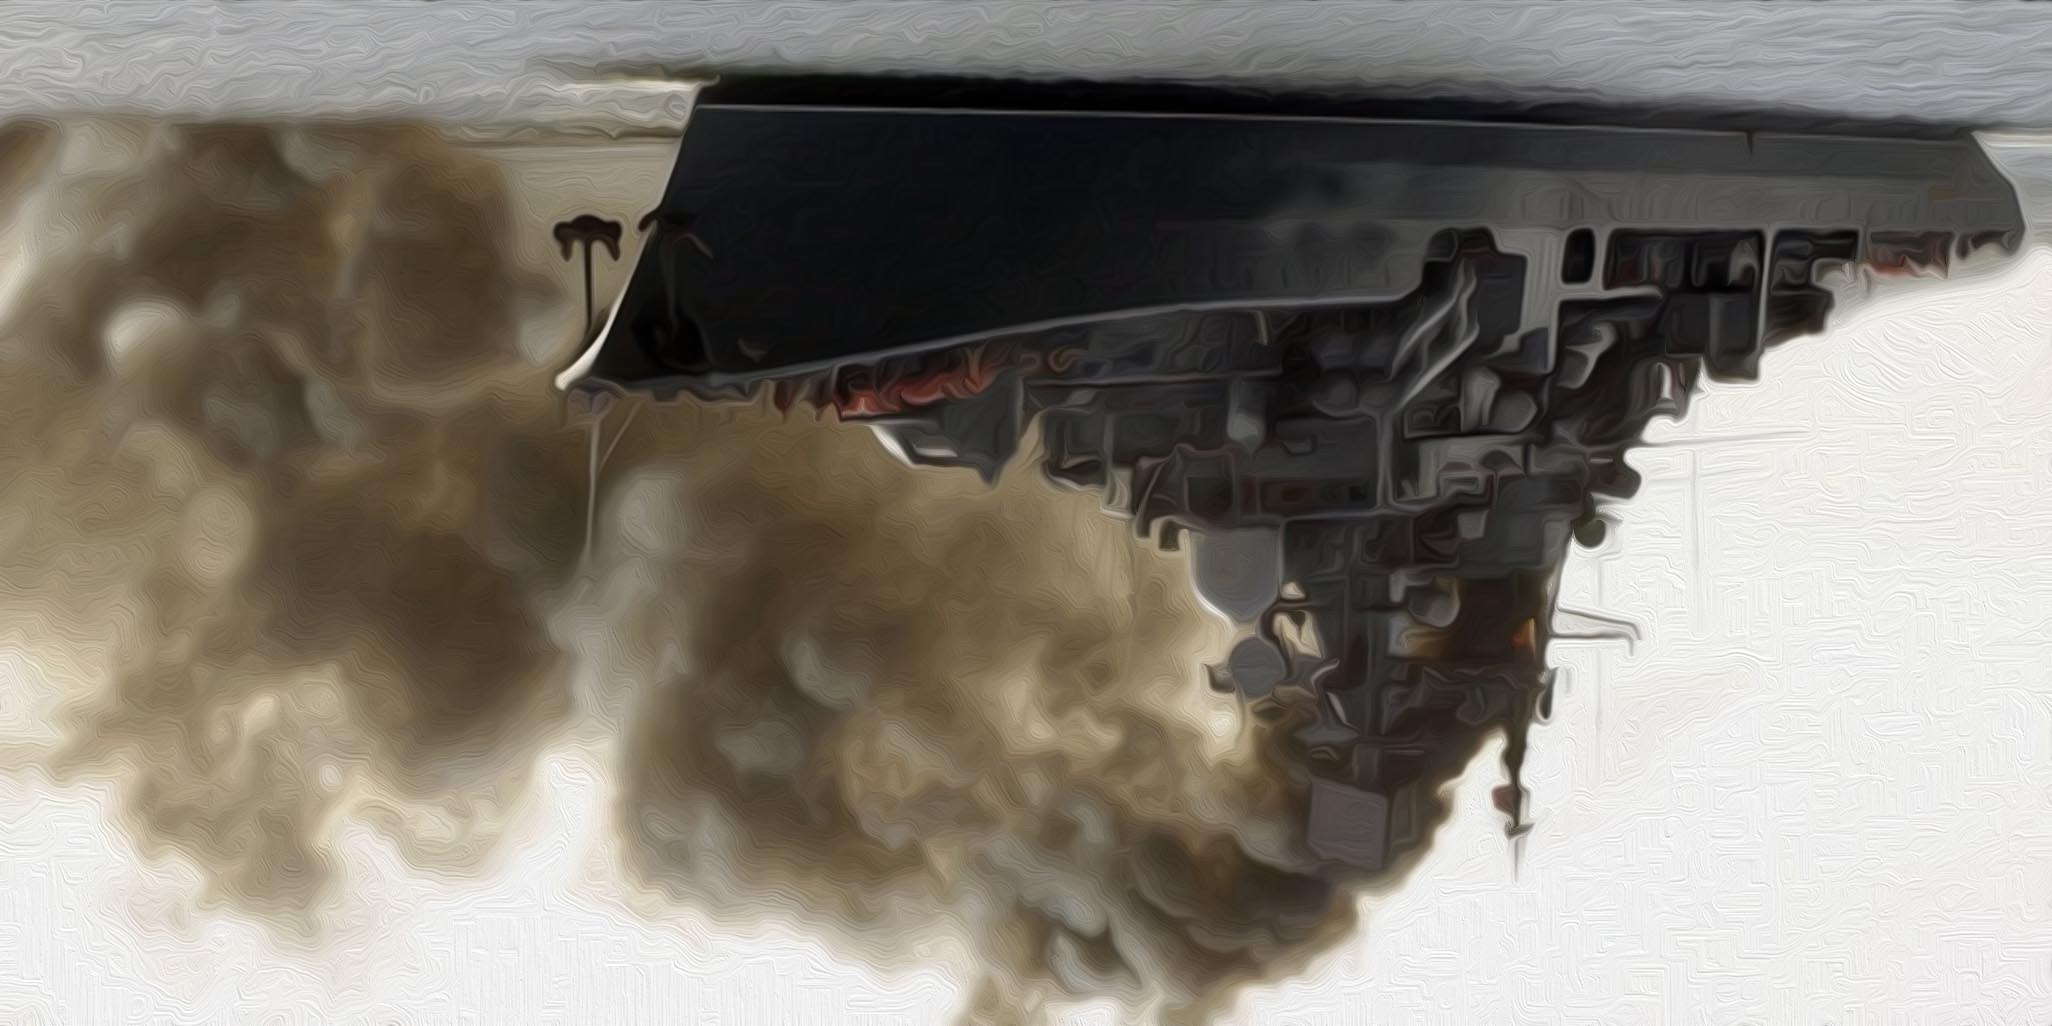 impression russisches Kriegsschiff bei simulation eines rauchgasangriffs vor Australien diwn under verkehrte Welt